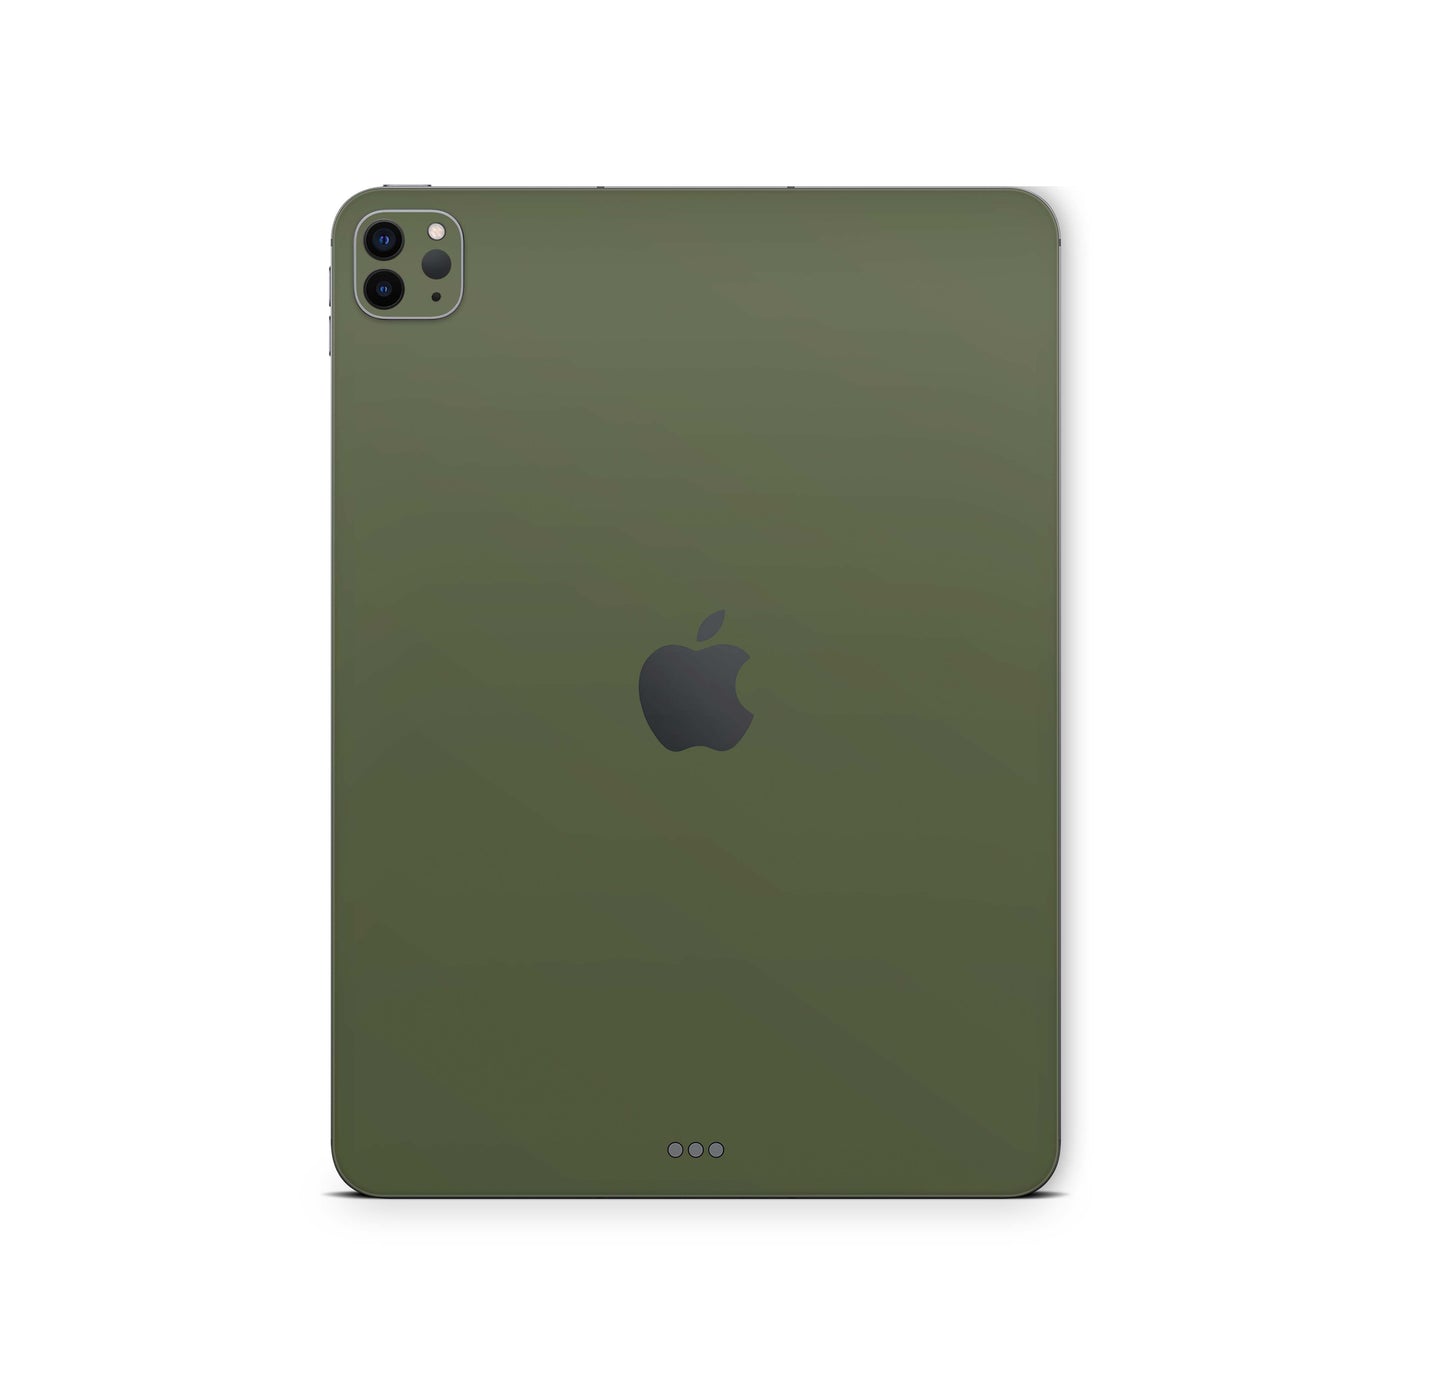 iPad Pro Skin 11" 3.Generation M1 2021 Design Cover Folie Vinyl Skins & Wraps Aufkleber Skins4u Solid-state-olive  